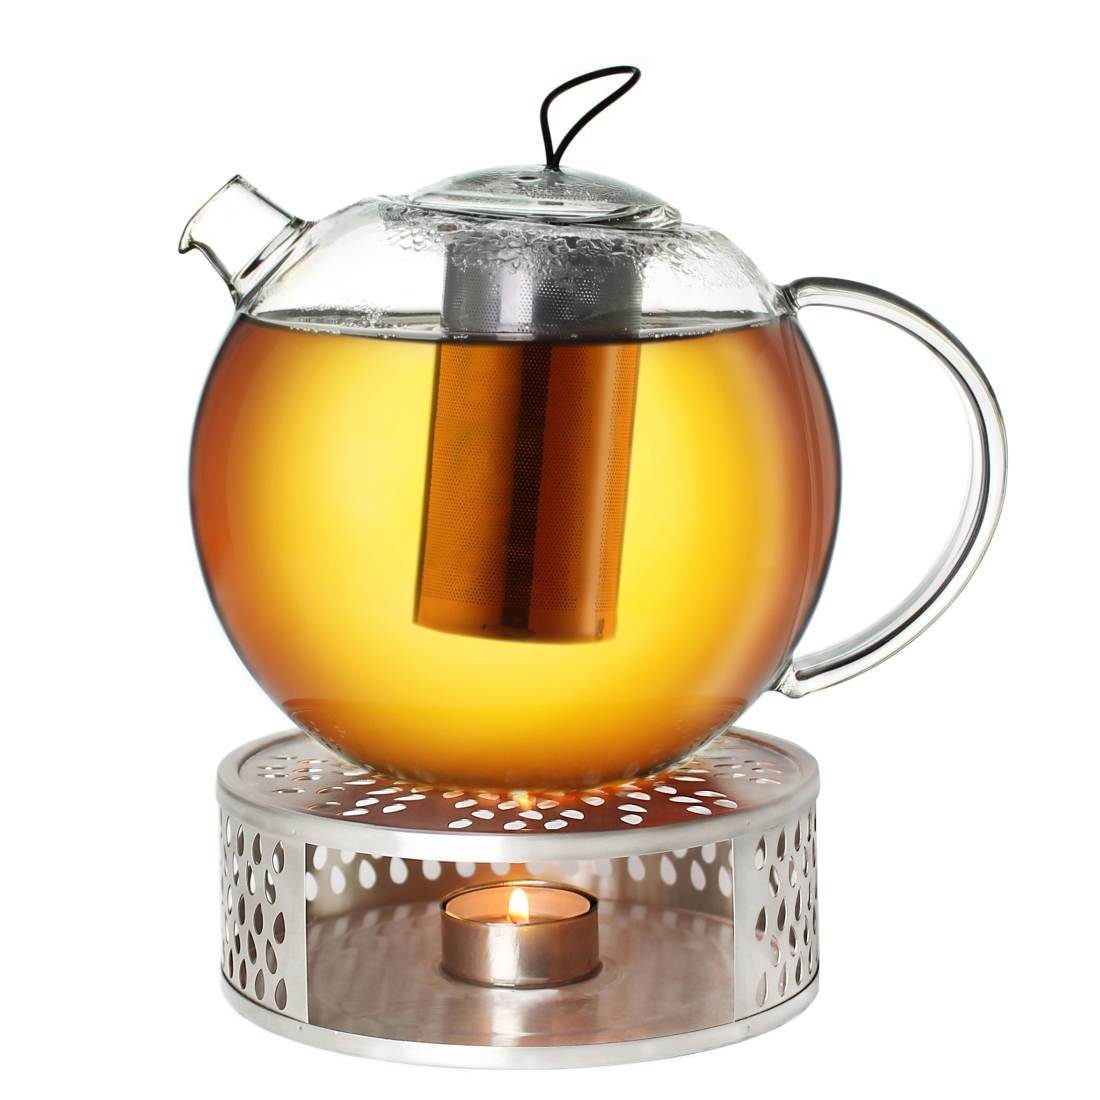 Creano Teekanne »Creano Teekanne aus Glas 2,0l Jumbo + ein Stövchen«, 2 l,  (Set, 1 Teekanne, 1 Stövchen, 1 Deckel), Mit Silikonschlaufe